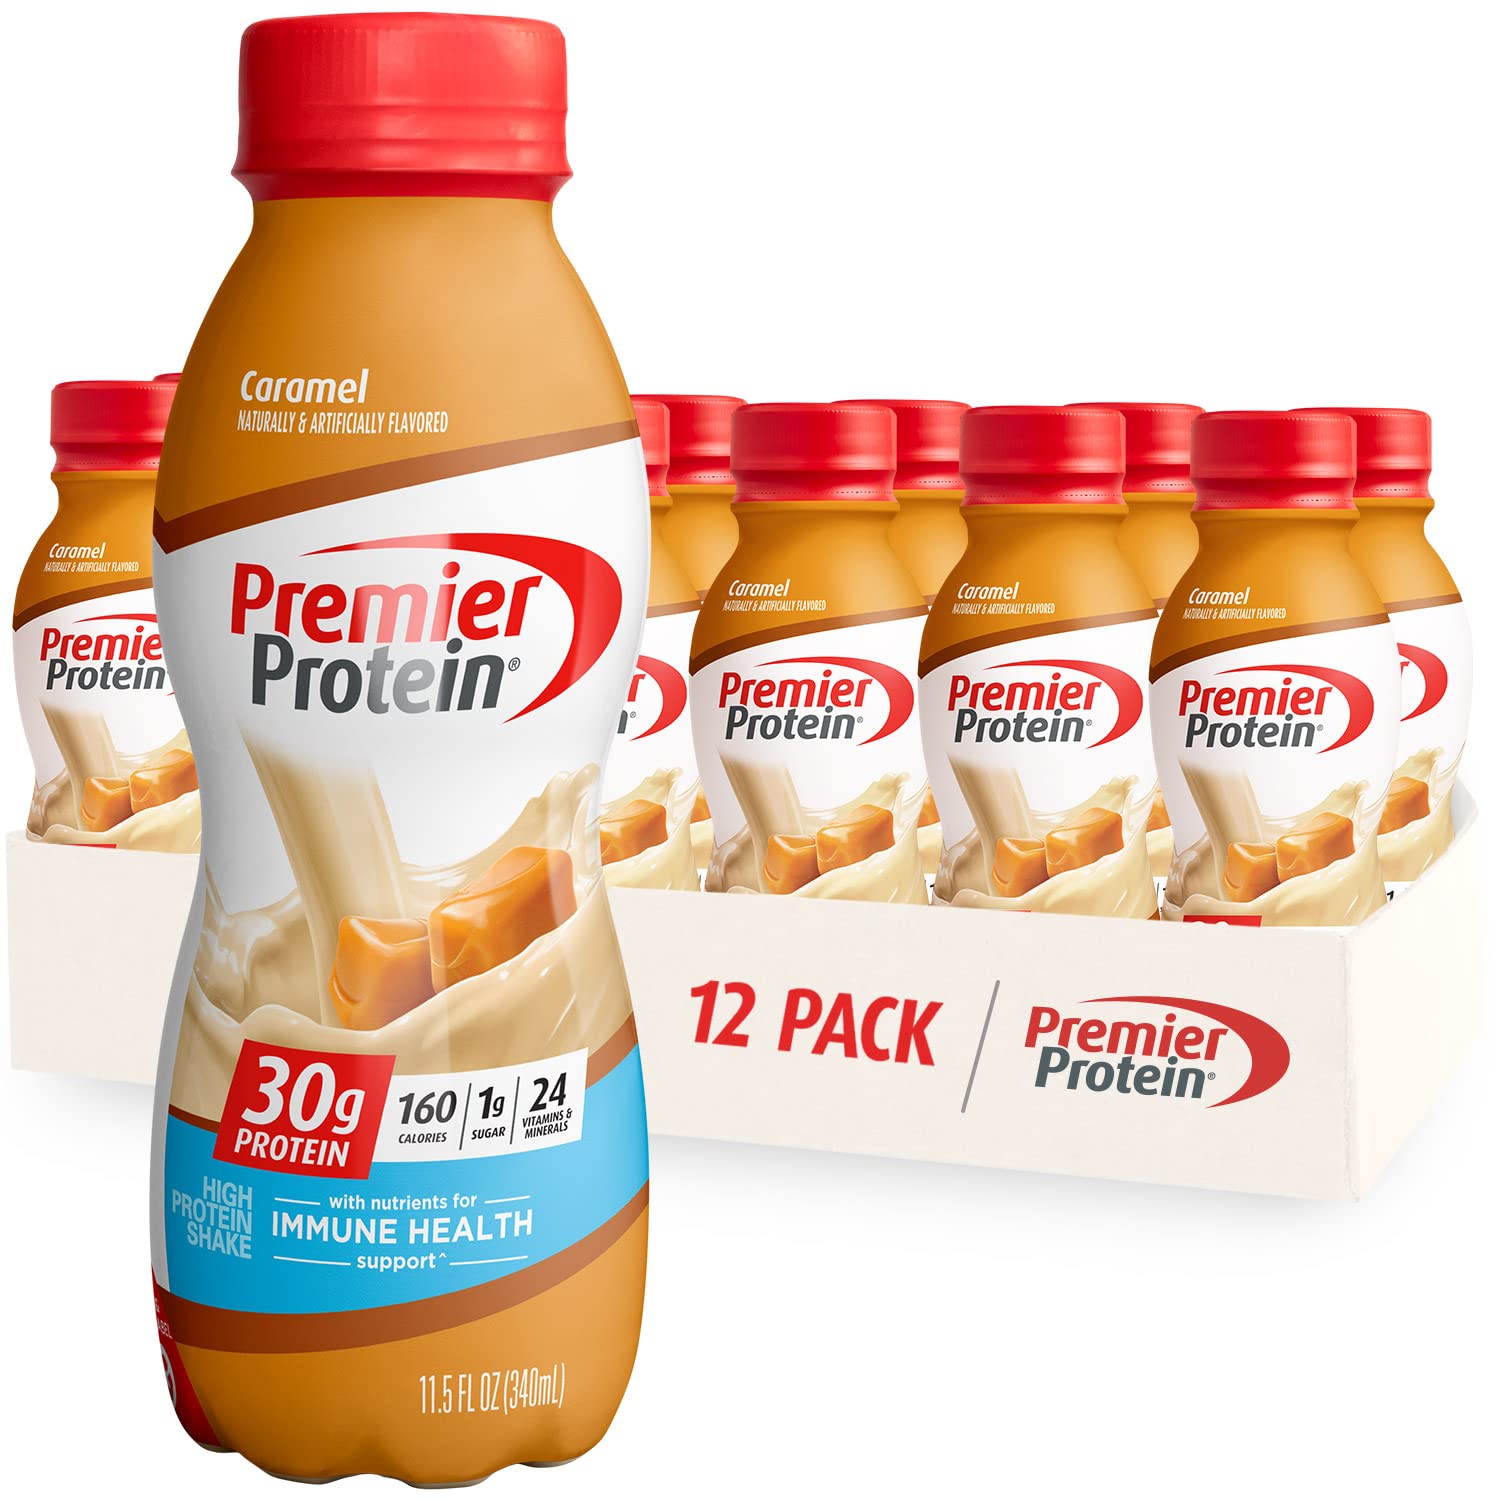 Premier Protein Shake, Caramel, 30g Protein, 1g Sugar, 24 Vitamins